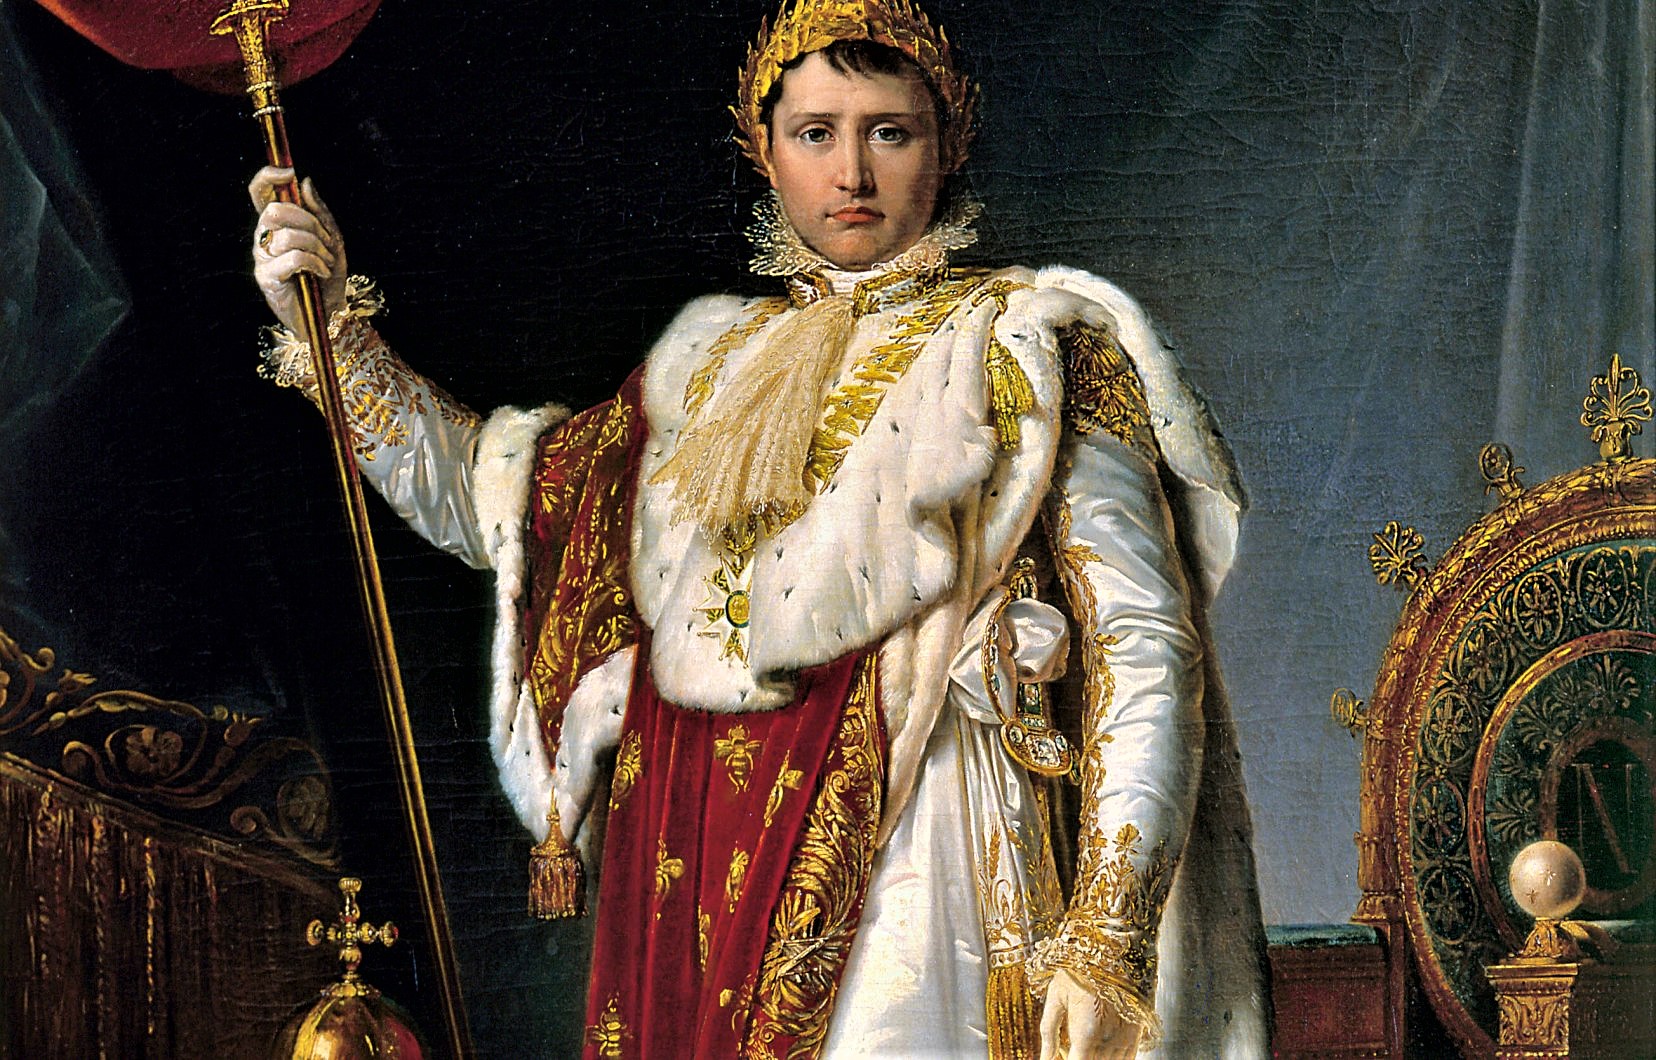 Histoire d'une annexion (heureusement) mise en échec, celle du canton du Valais par Napoléon